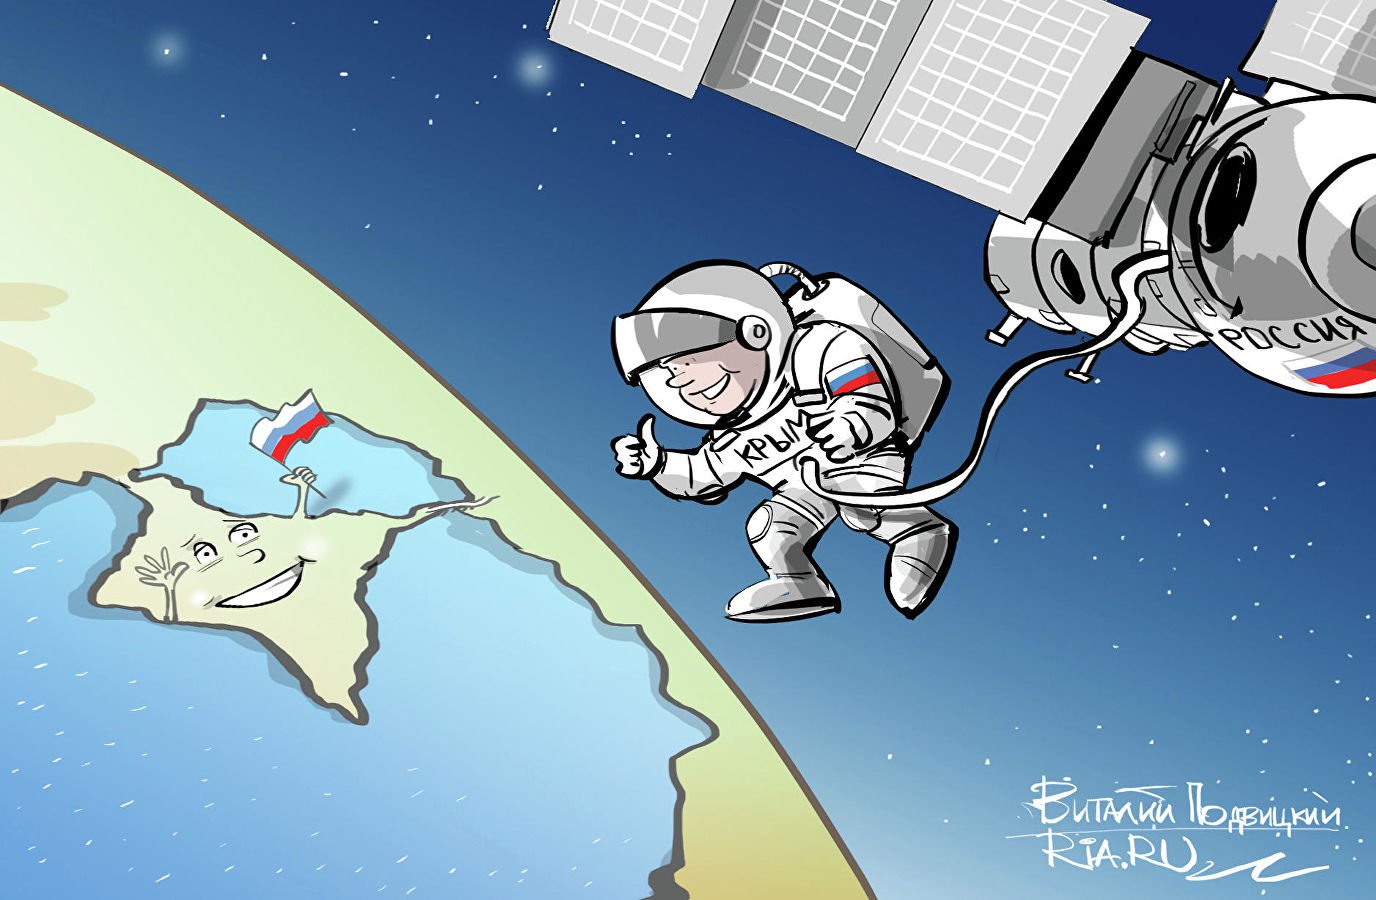 Карикатура "Пять лет – полет нормальный", Виталий Подвицкий